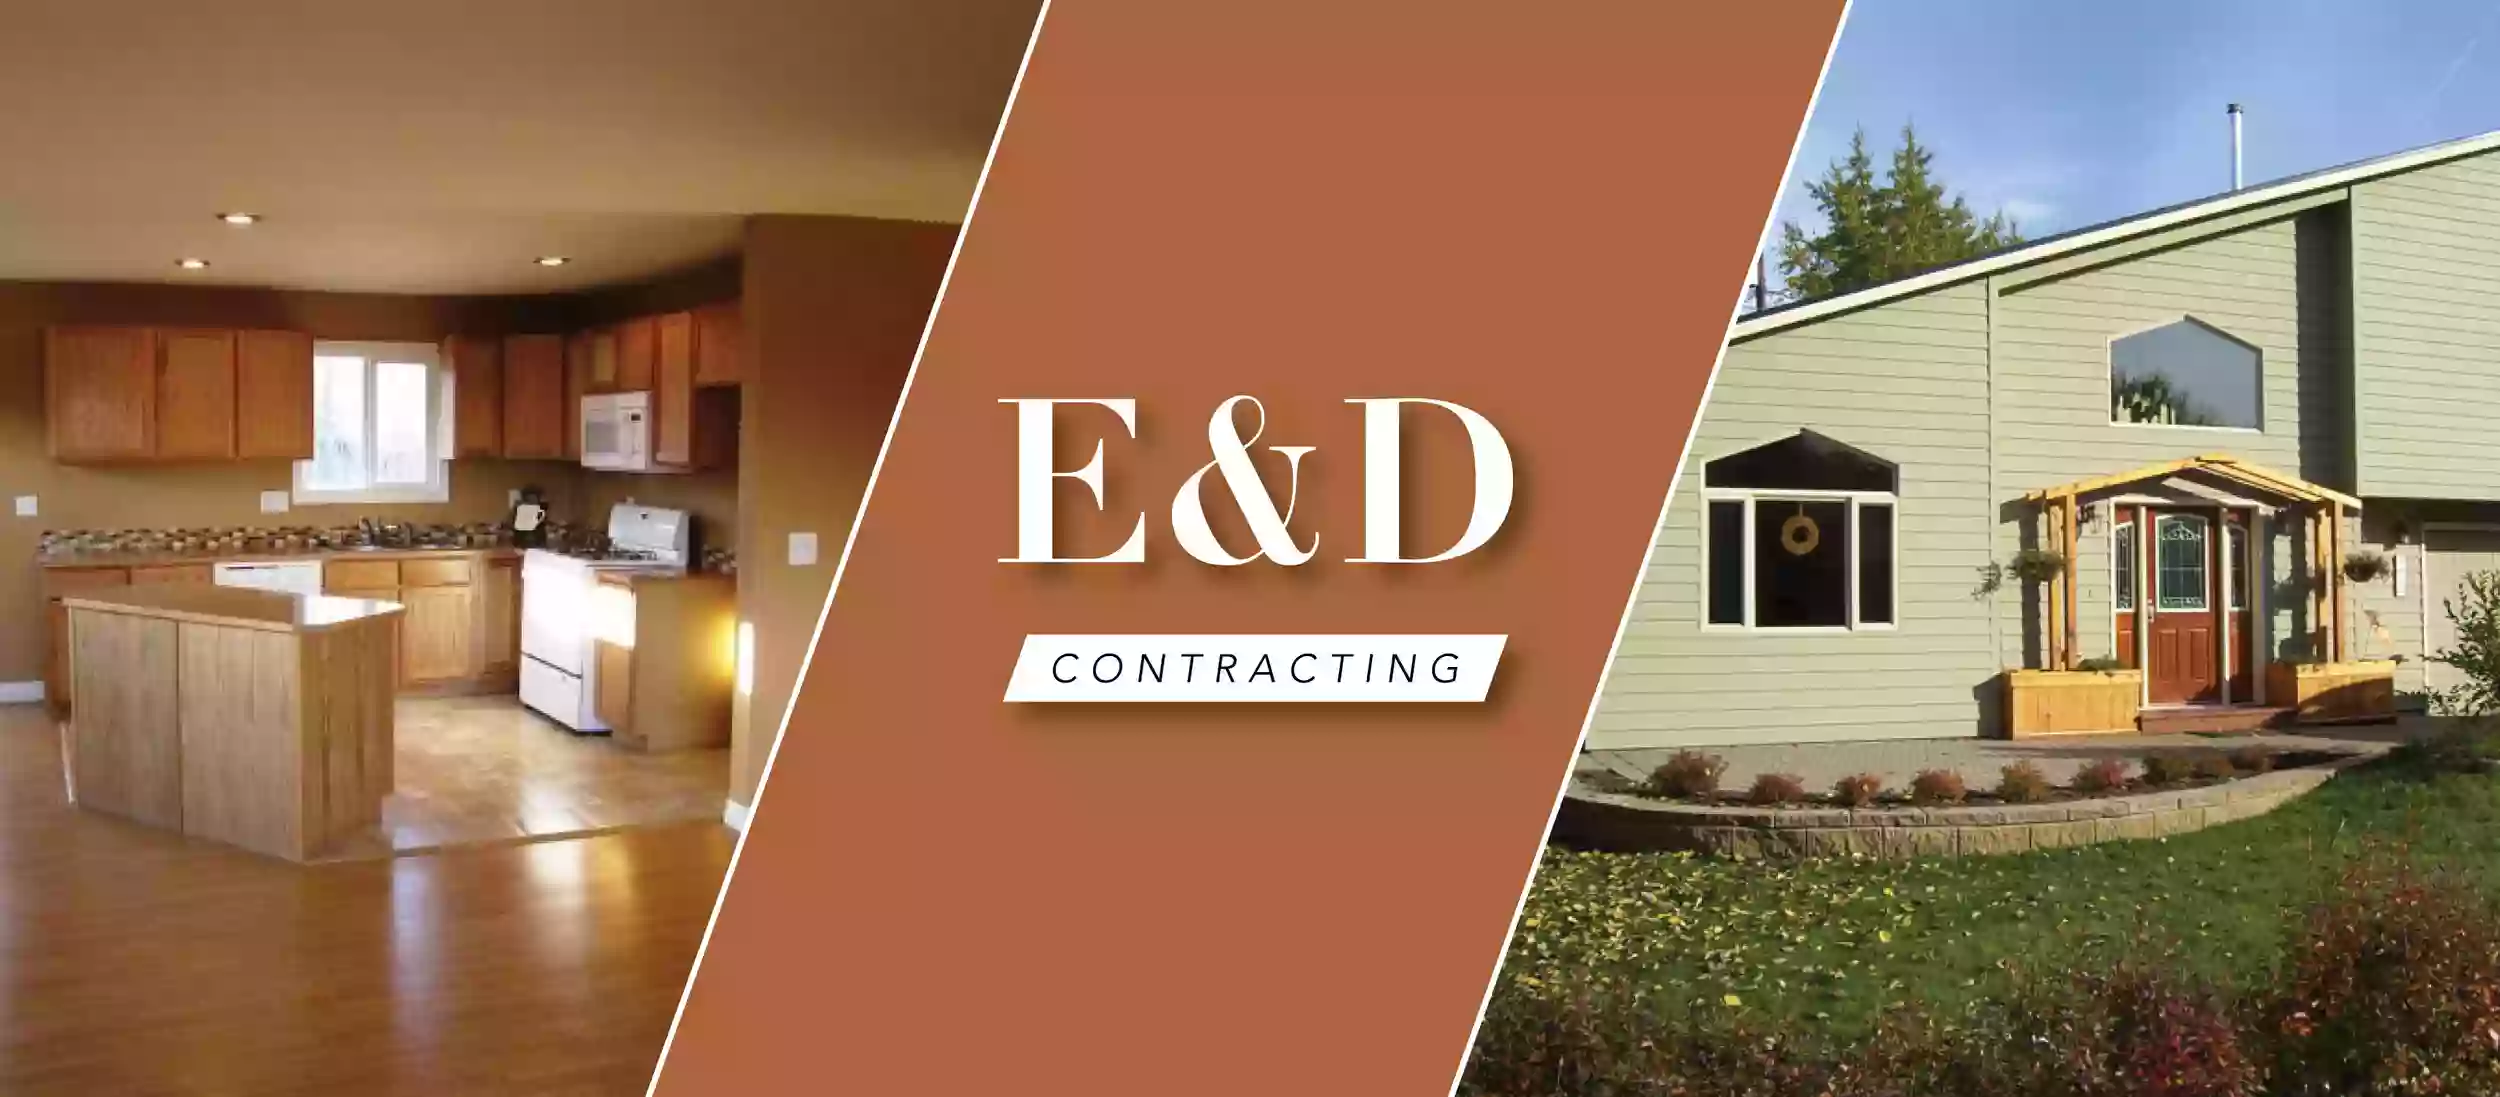 E & D Contracting LLC